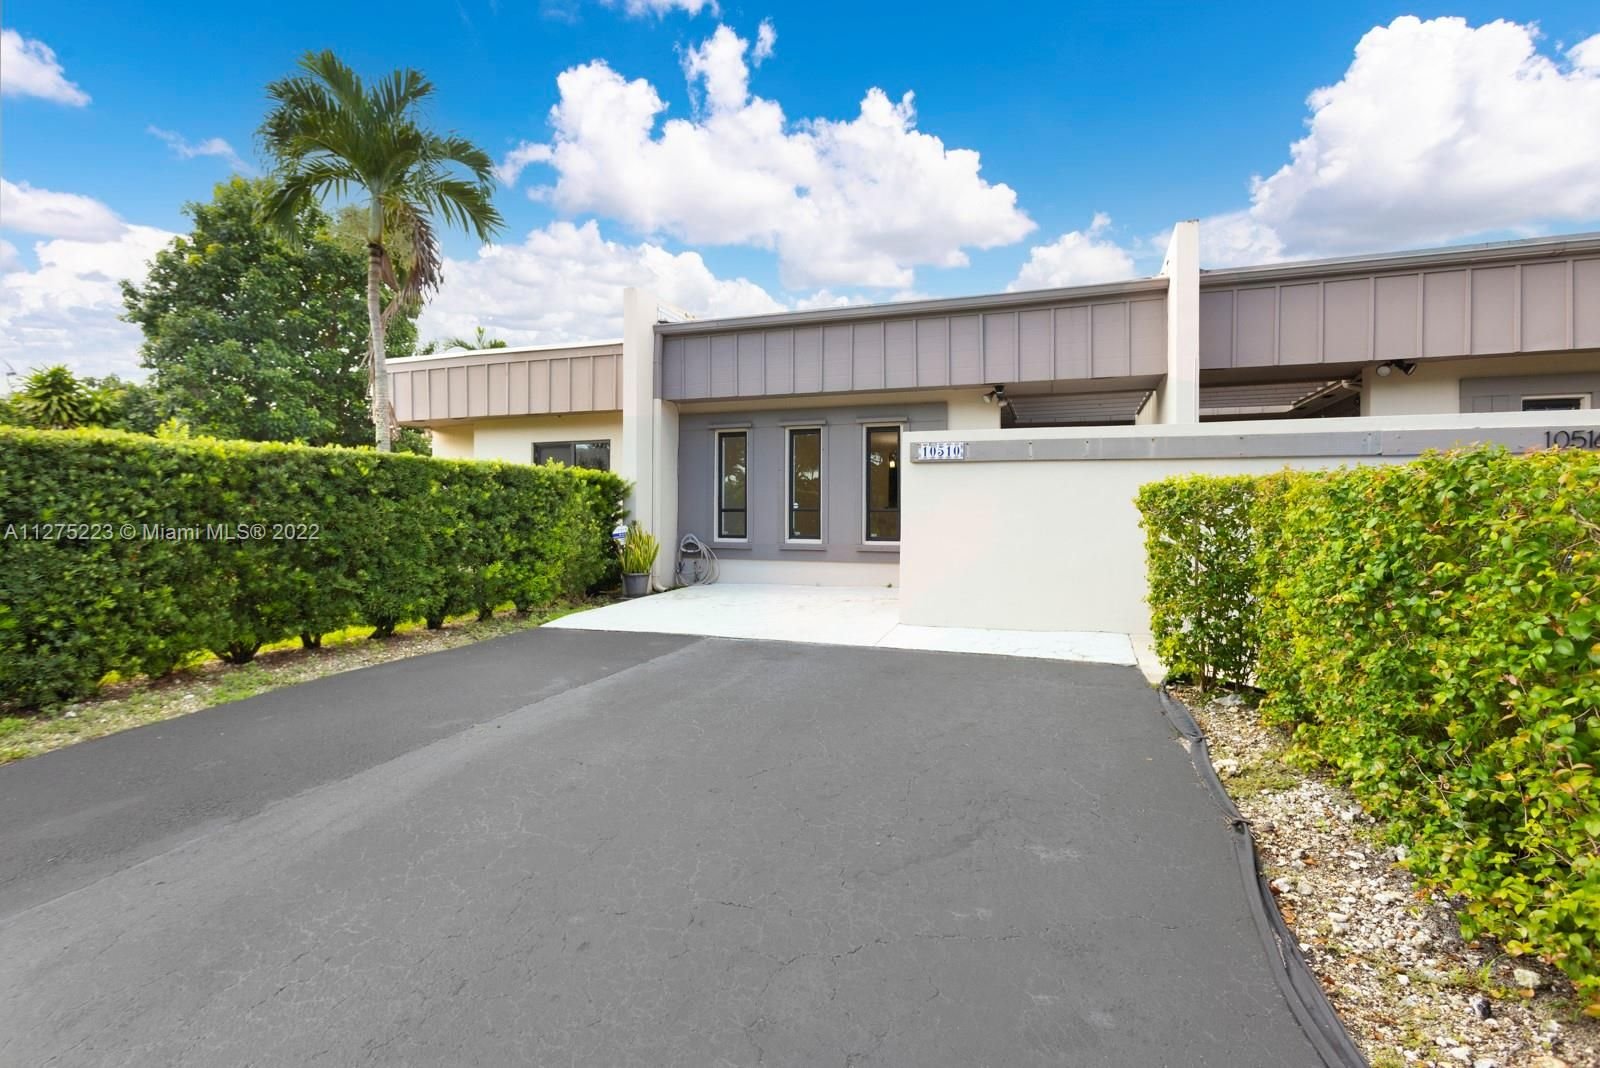 Real estate property located at 10510 74th Ln, Miami-Dade County, Miami, FL